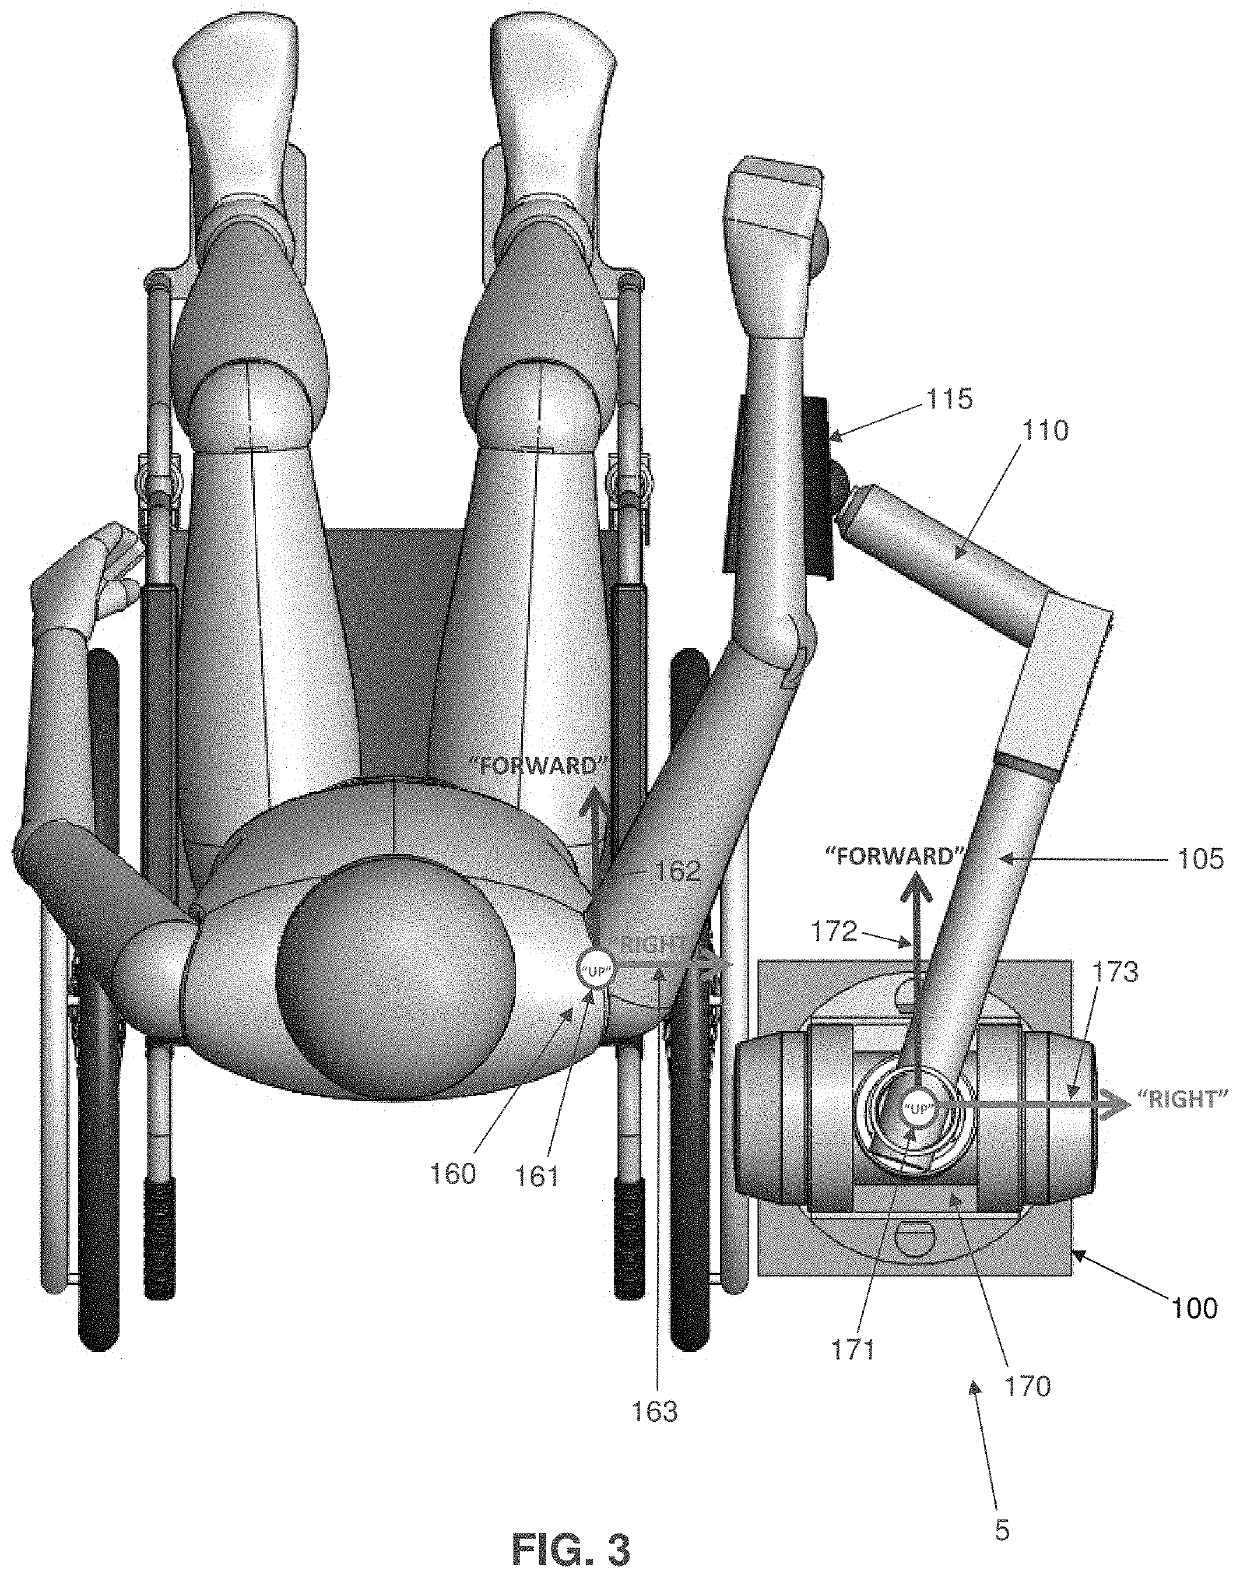 Multi-active-axis, non-exoskeletal robotic rehabilitation device